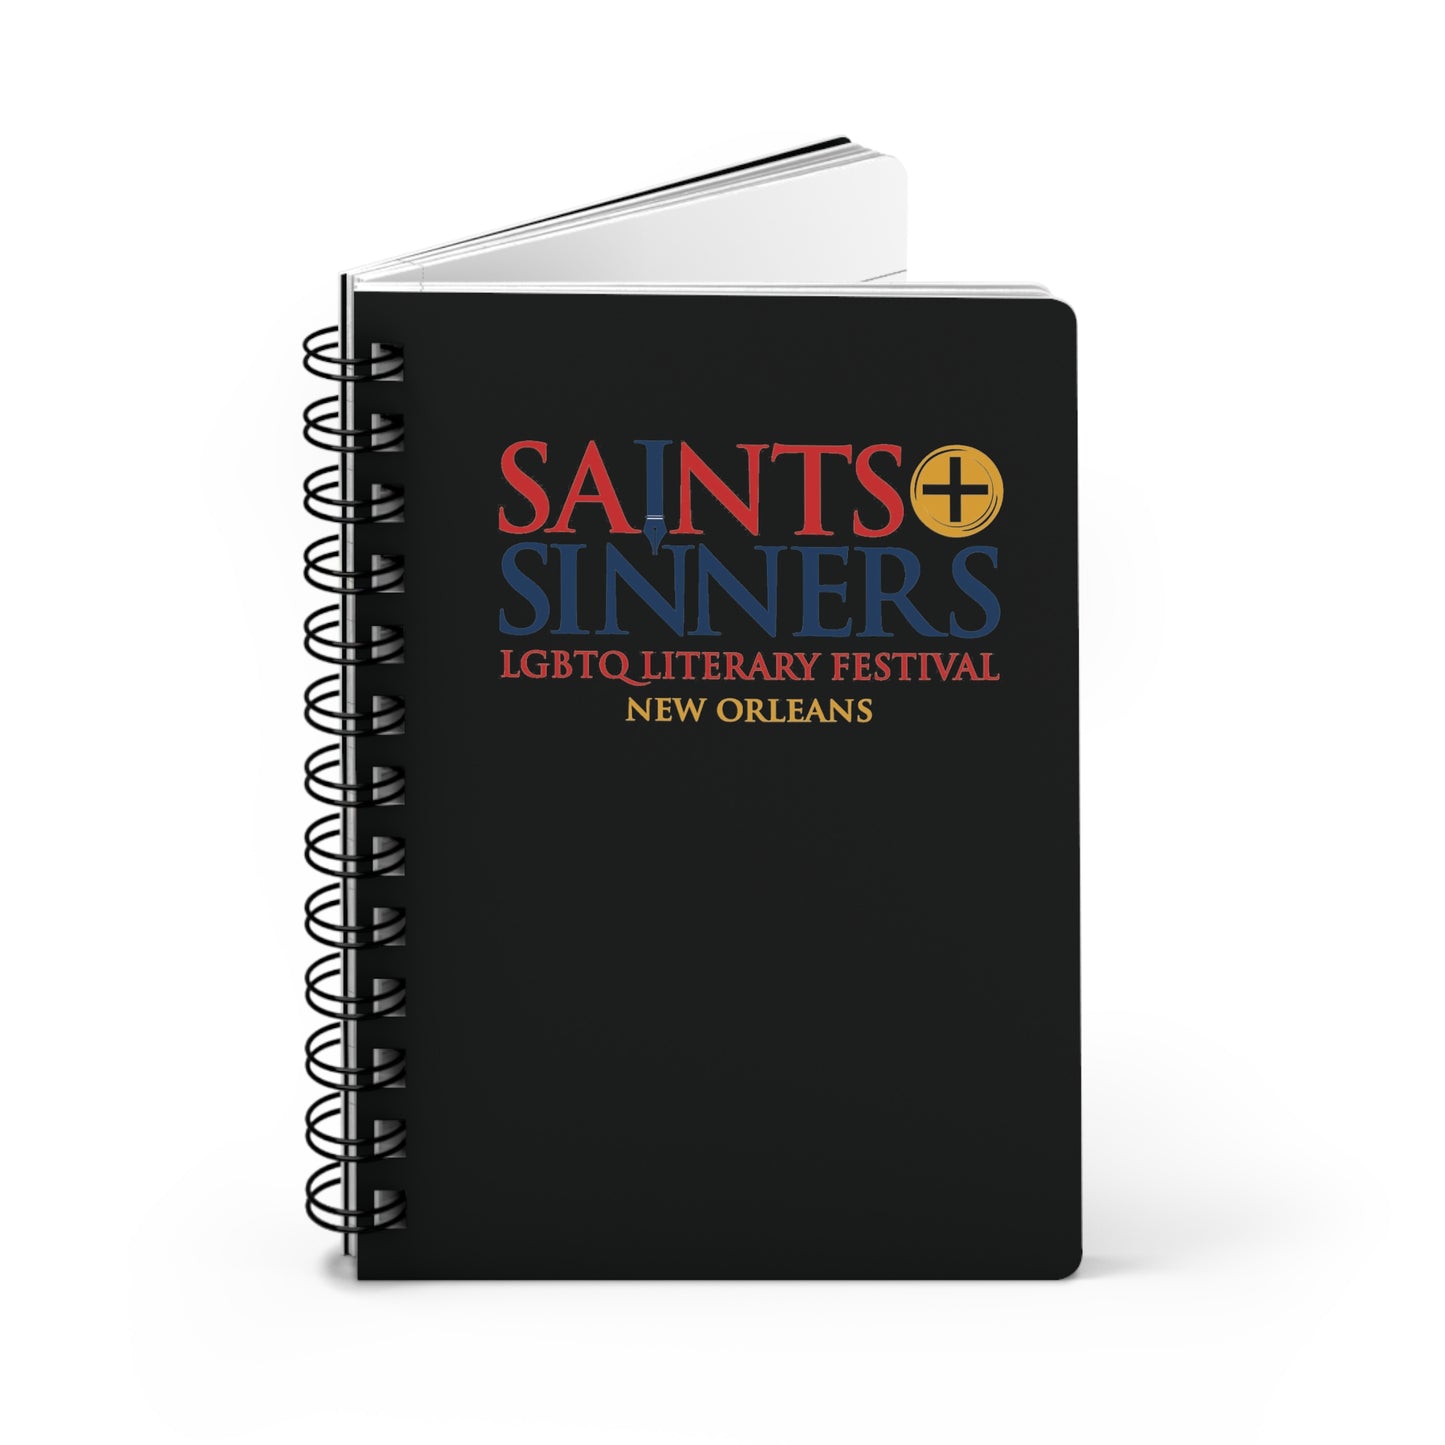 Saints & Sinners Logo Spiral Bound Journal - Black